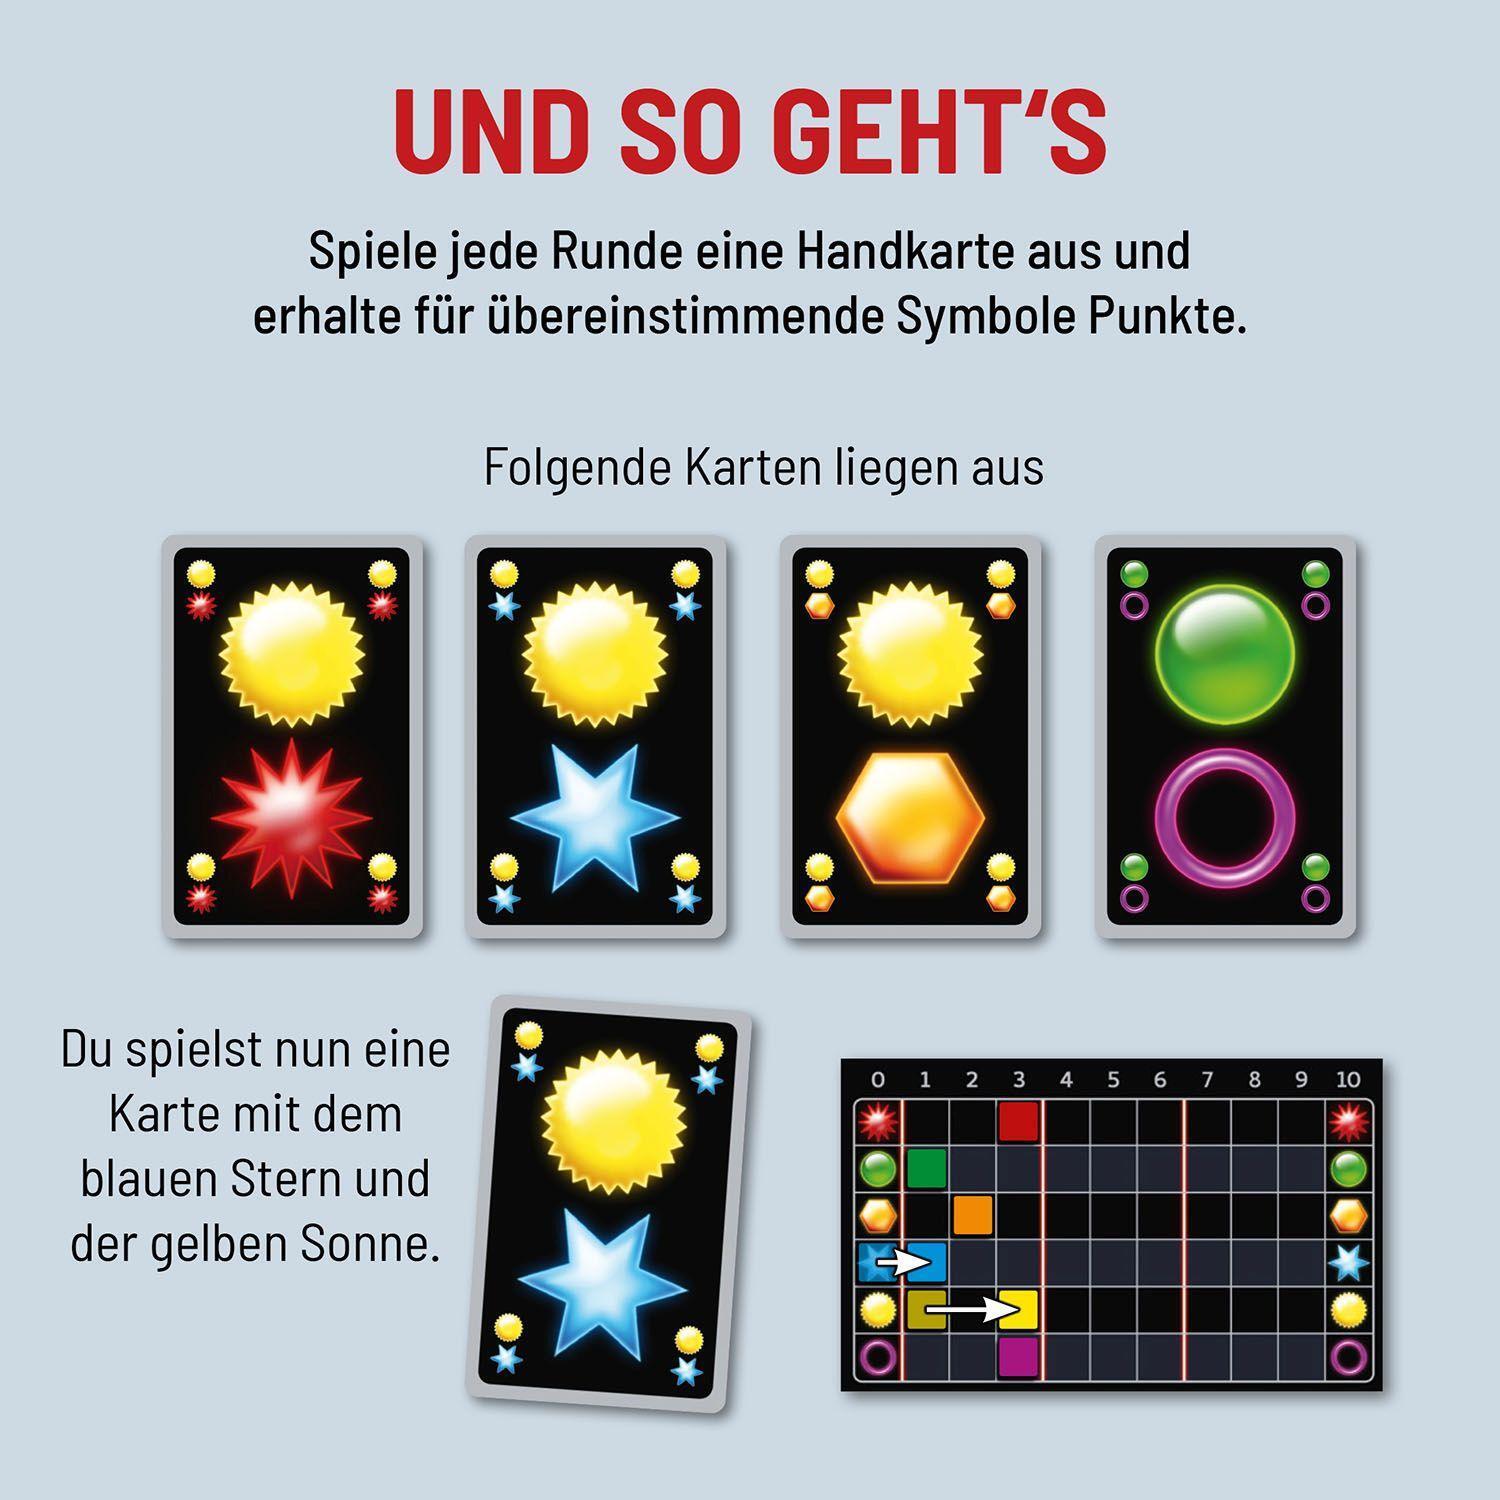 Bild: 4002051682231 | Einfach Genial - Das Kartenspiel | Spiel | Deutsch | 2022 | Kosmos